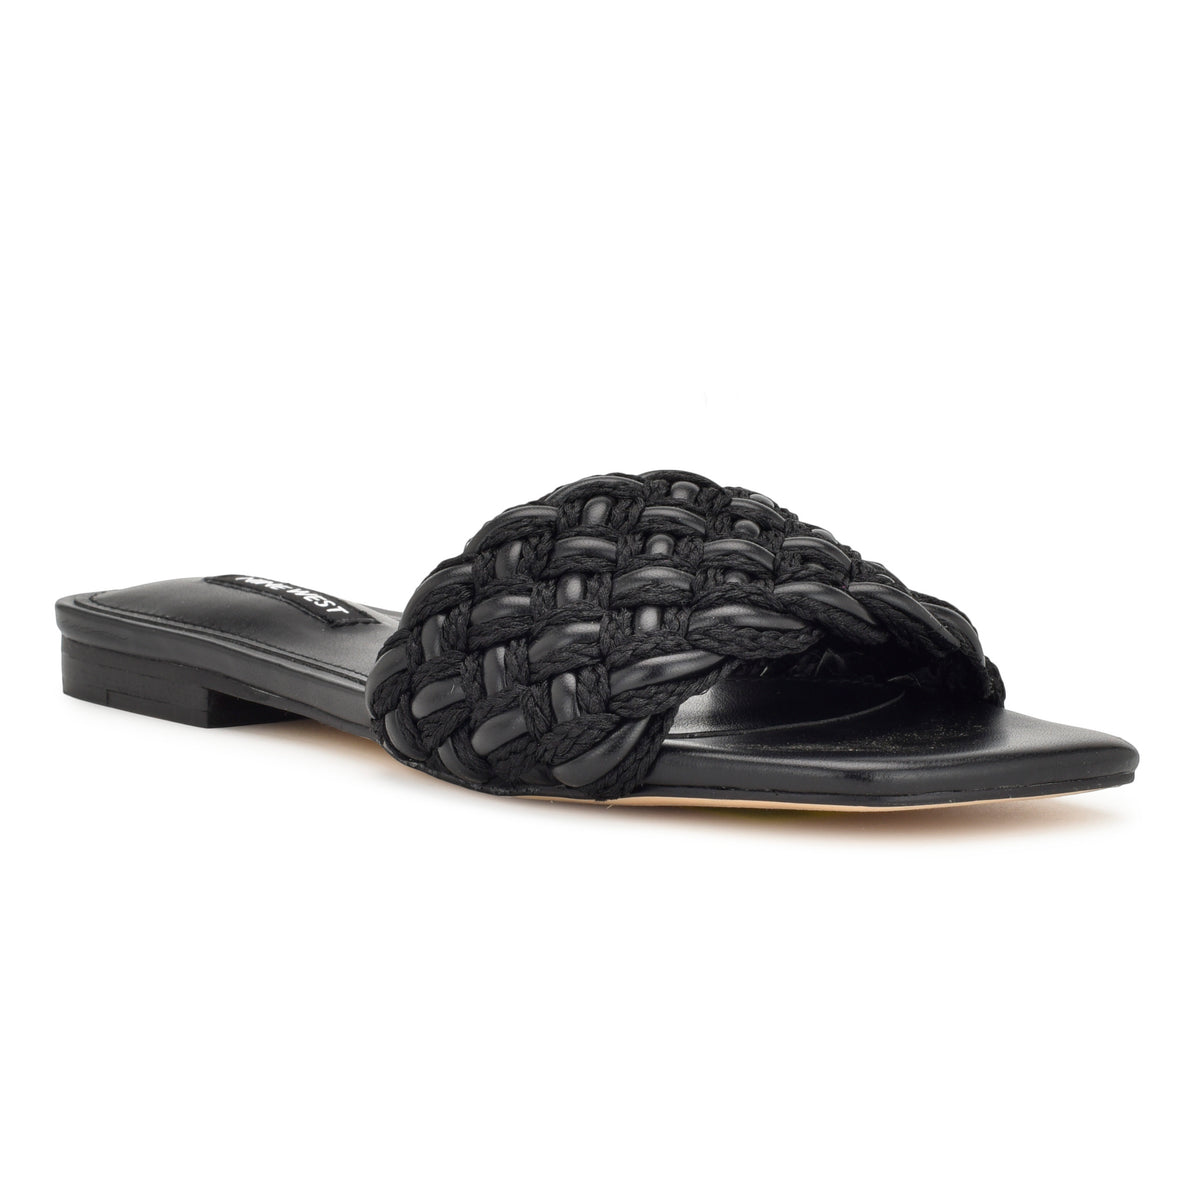 Maci Flat Slide Sandals